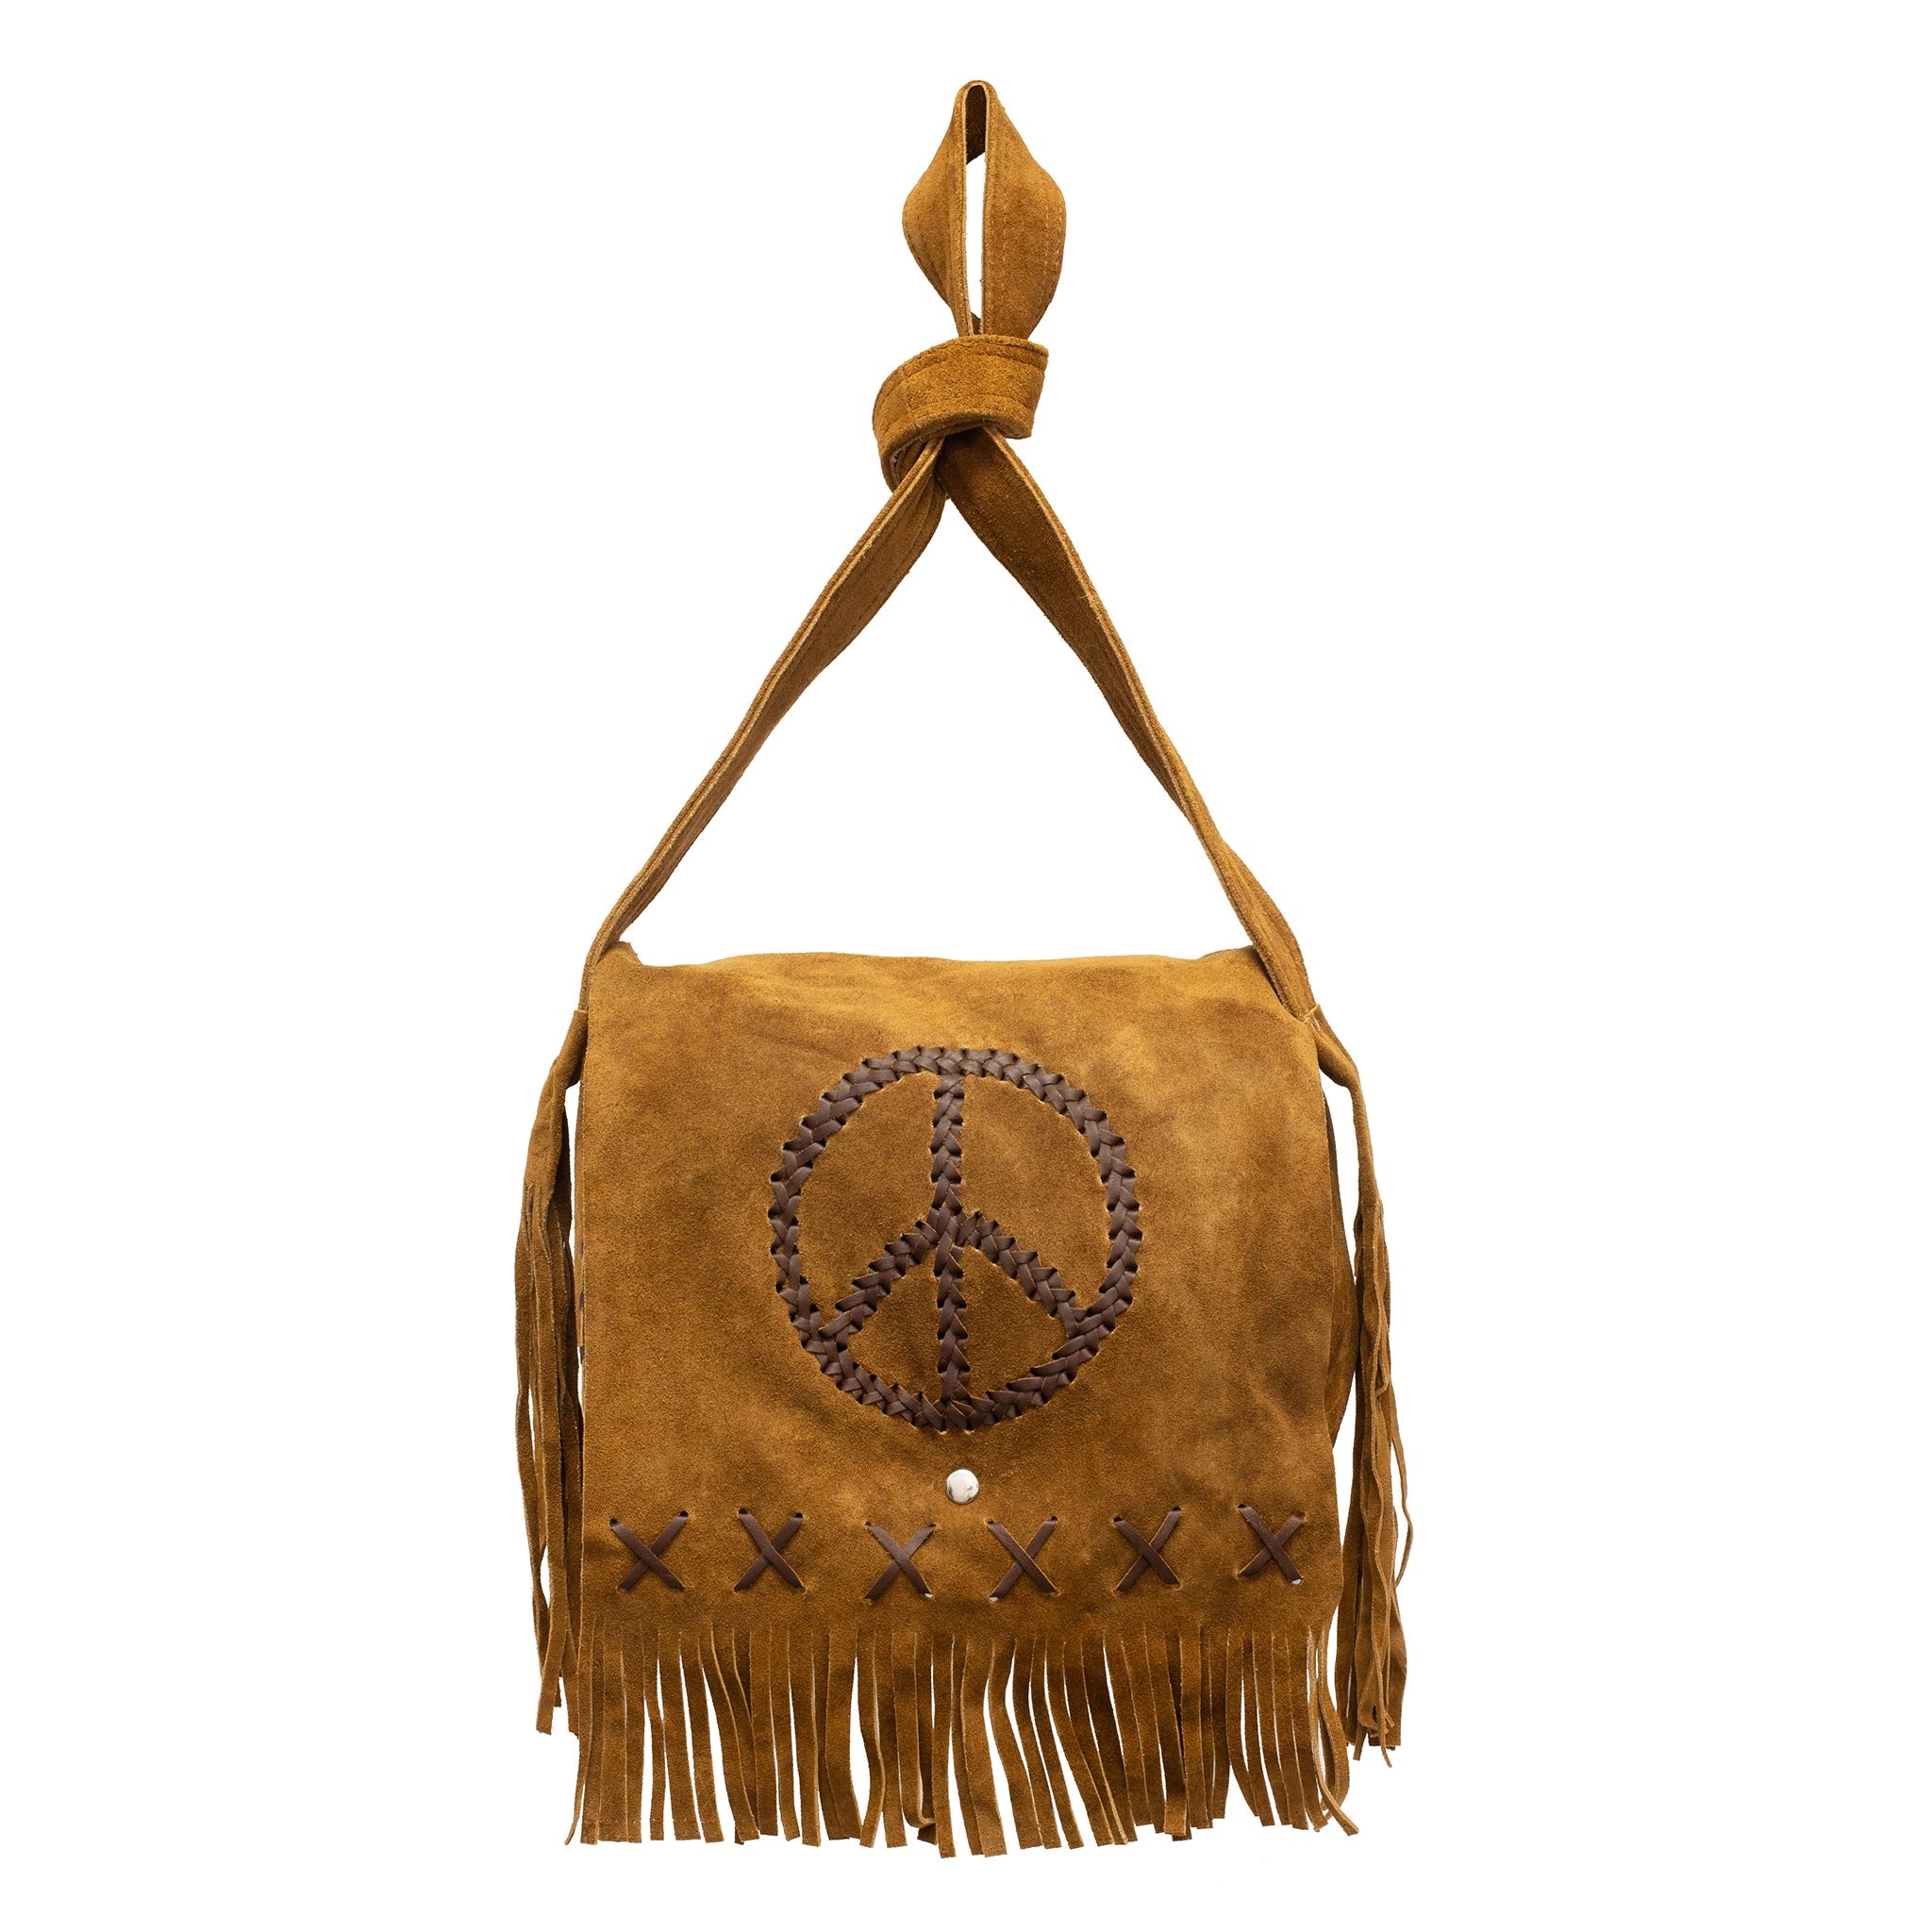 VINTAGE TASSEL BAG Tan Brown Braided Leather Bag Hippie 